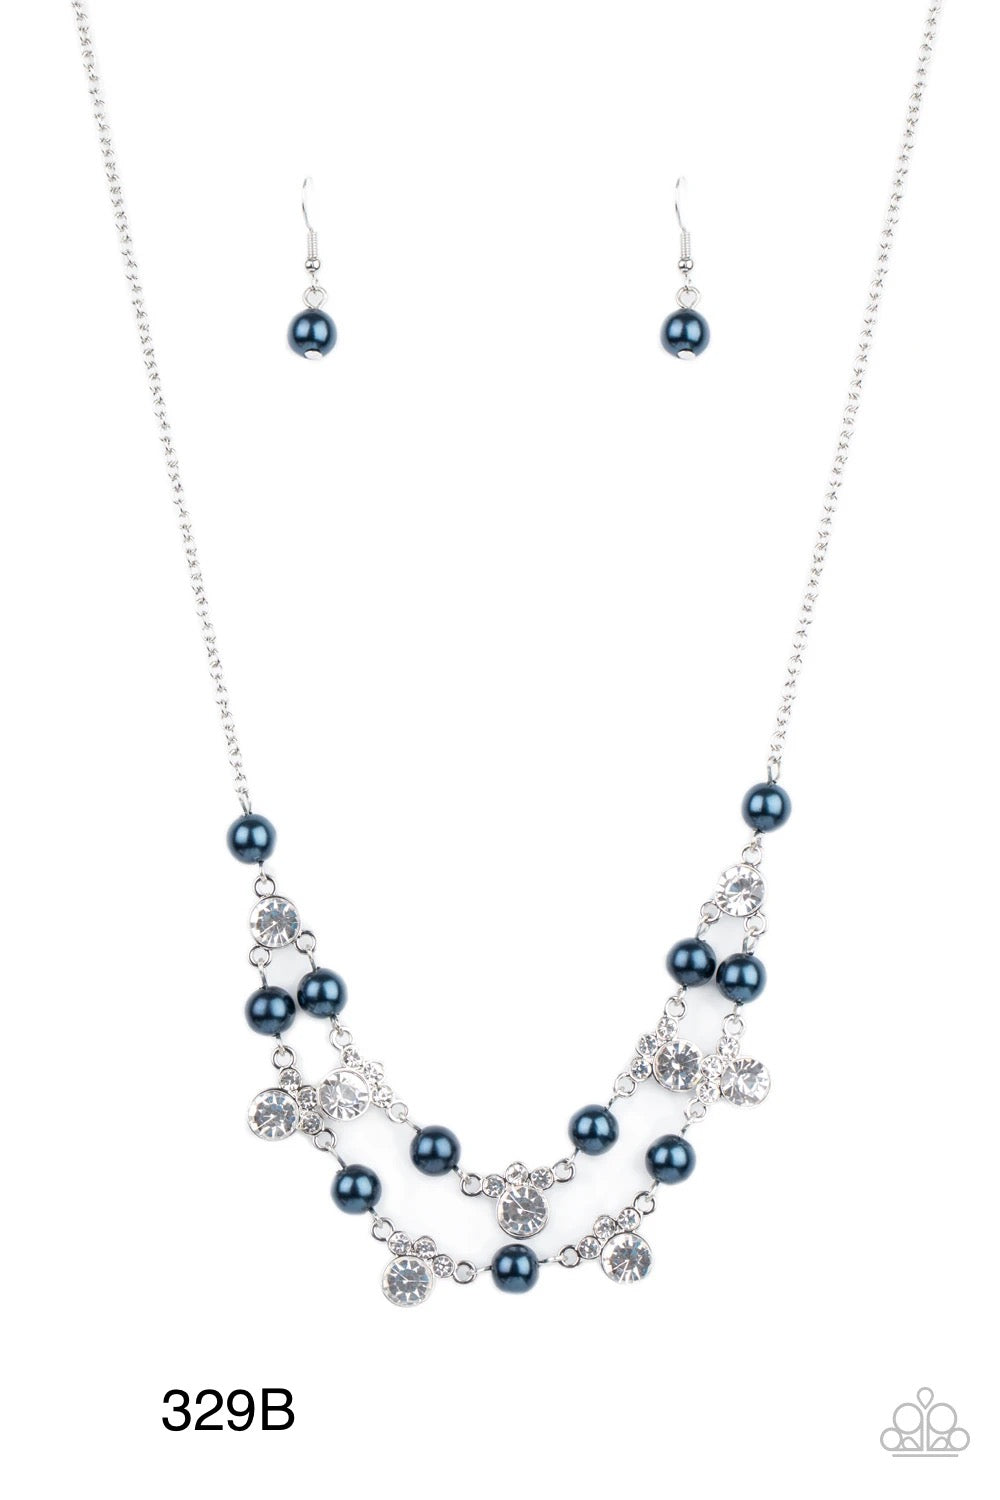 Paparazzi “Royal Announcement” - Blue Necklace Earring Set